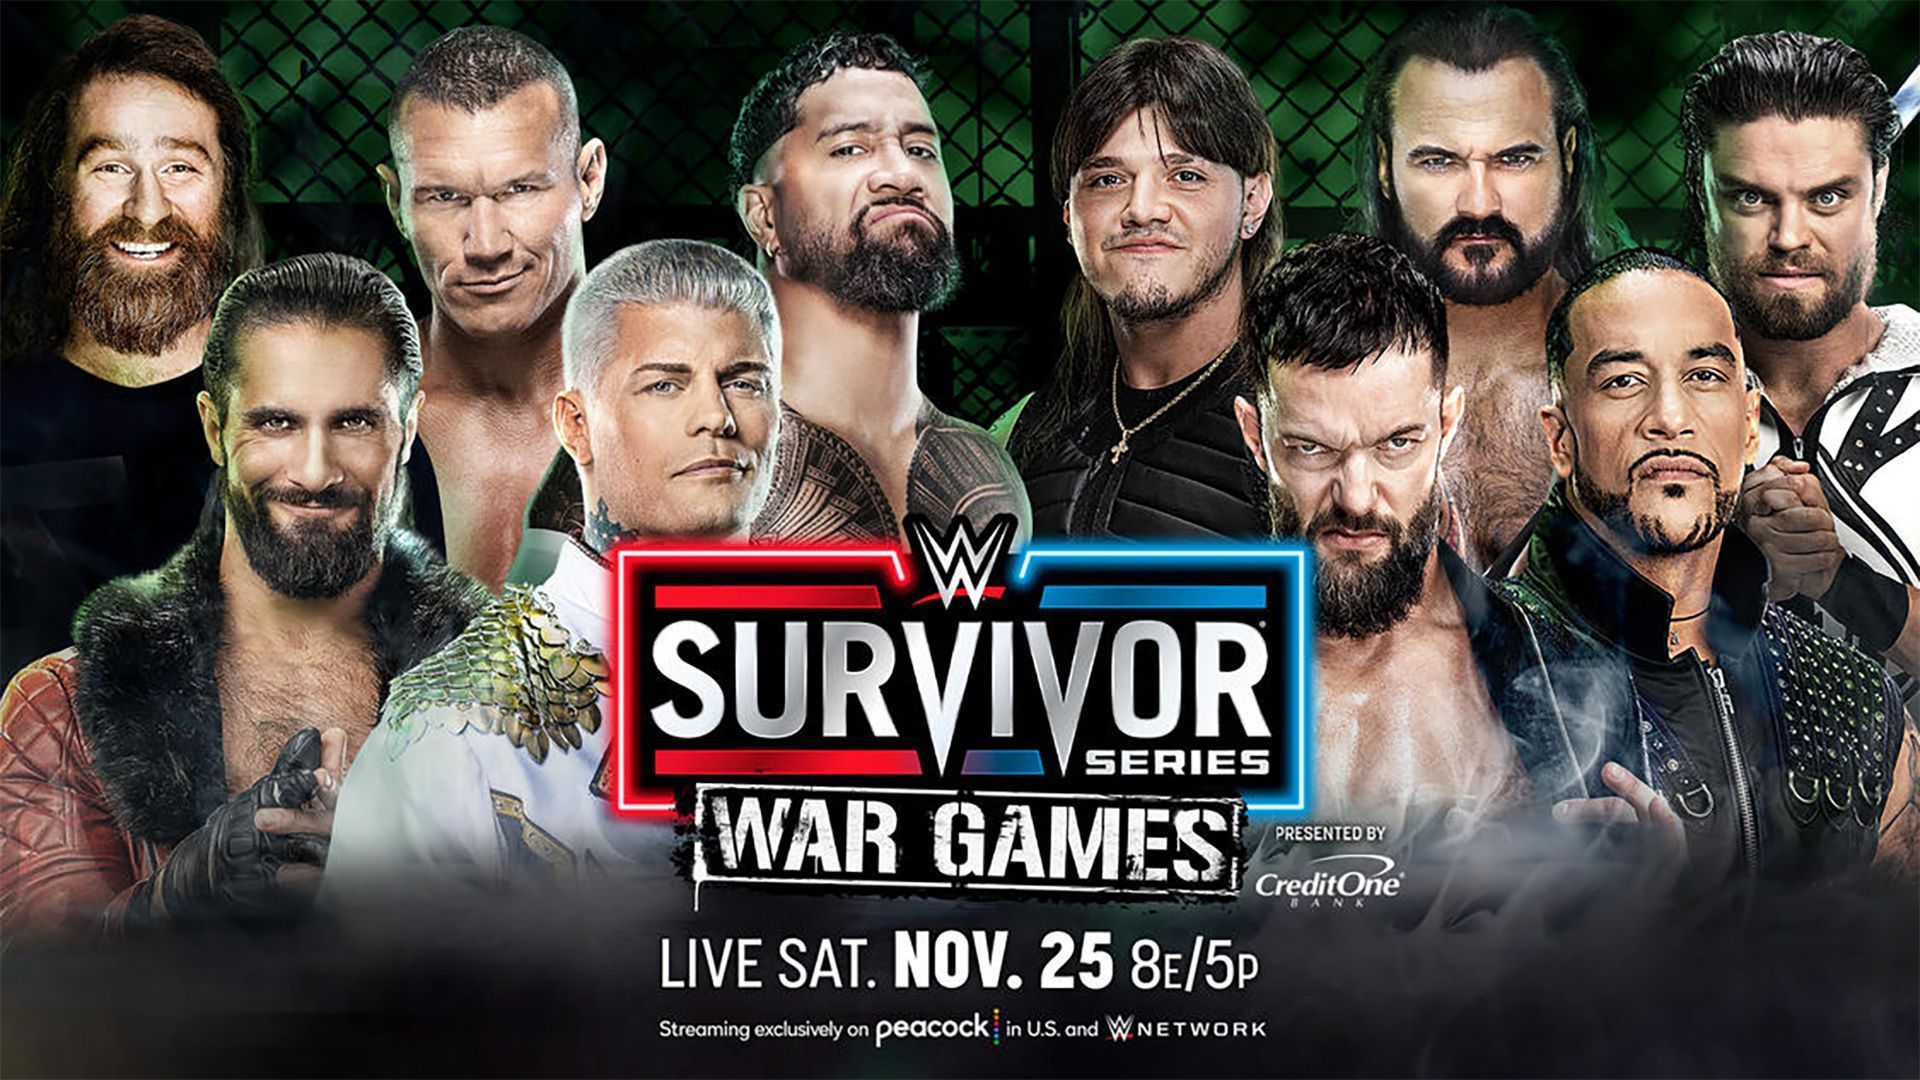 Team Rhodes vs. Team Judgment Day at WWE Survivor Series